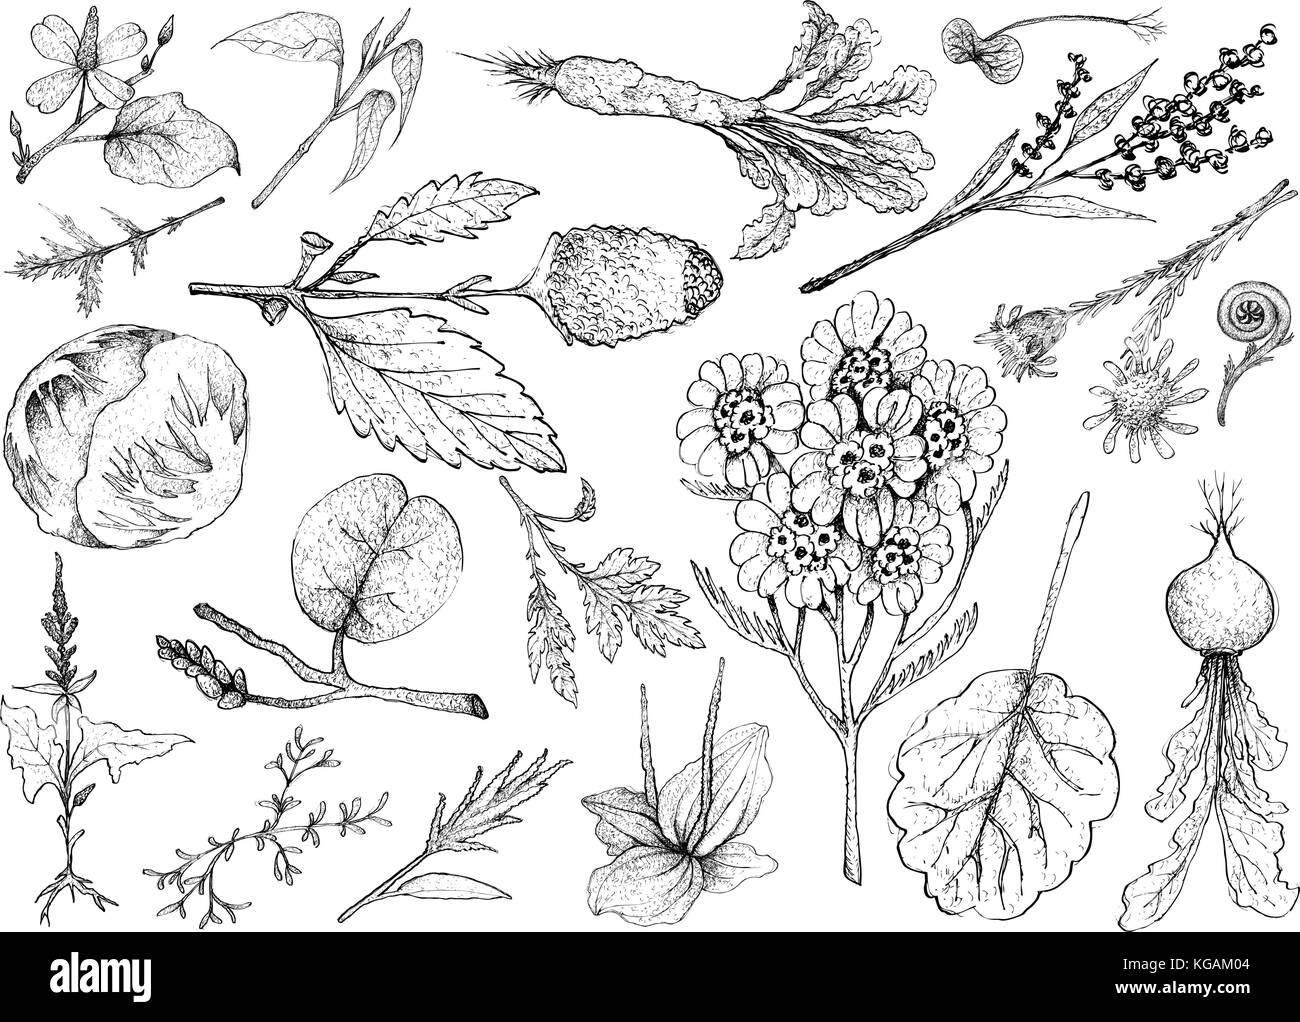 Salat, Illustration von Hand gezeichnete Skizze köstliche frische grüne grüne und Salat Gemüse auf weißem Hintergrund. Stock Vektor